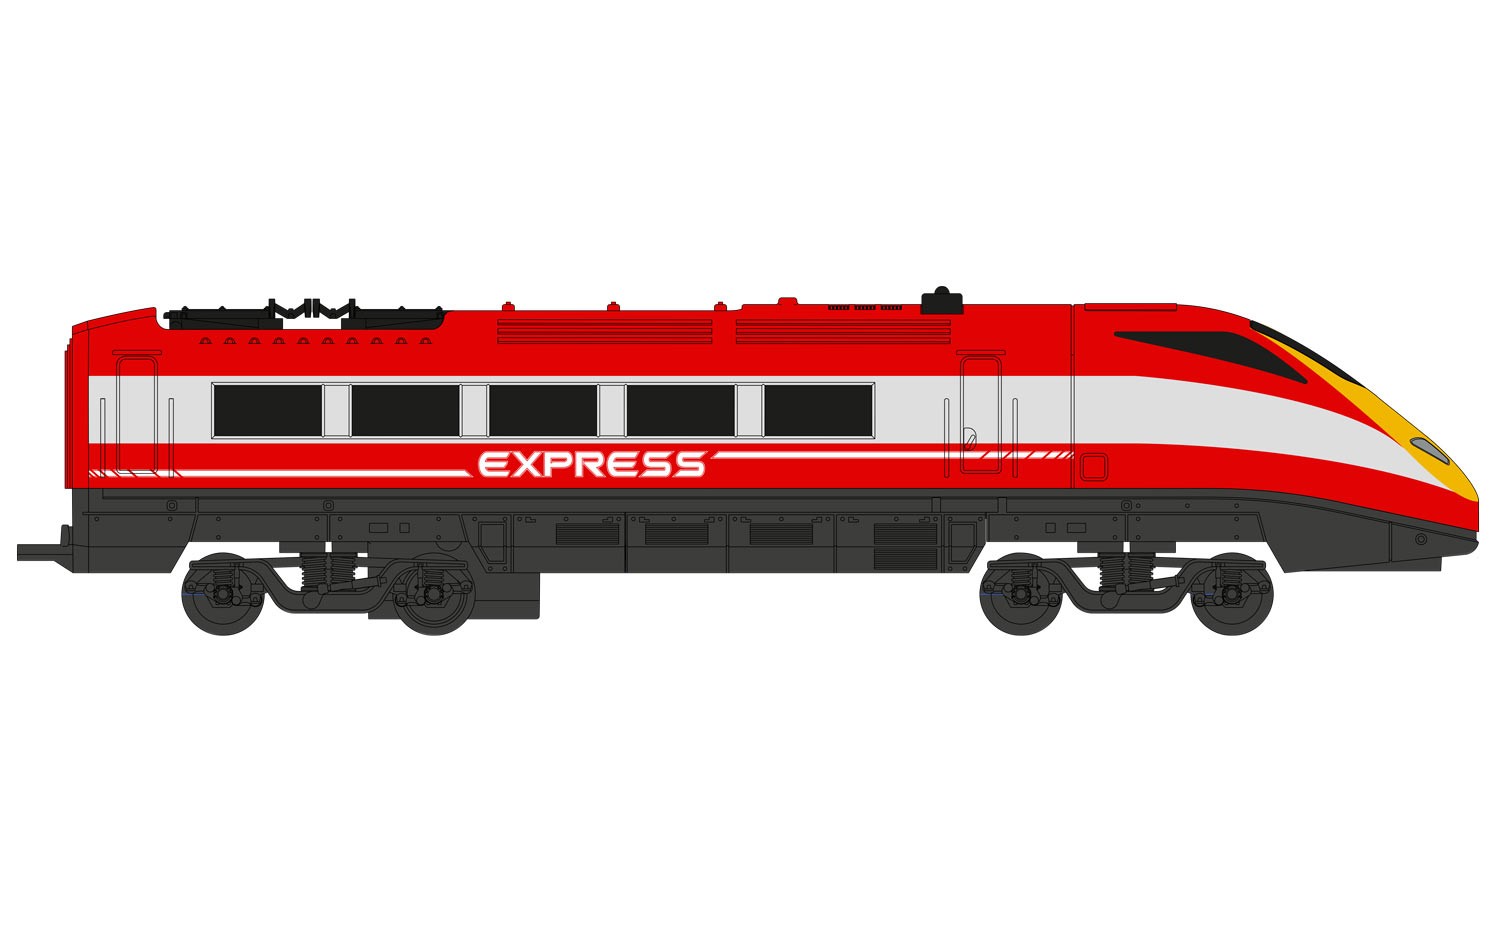 hornby express train set